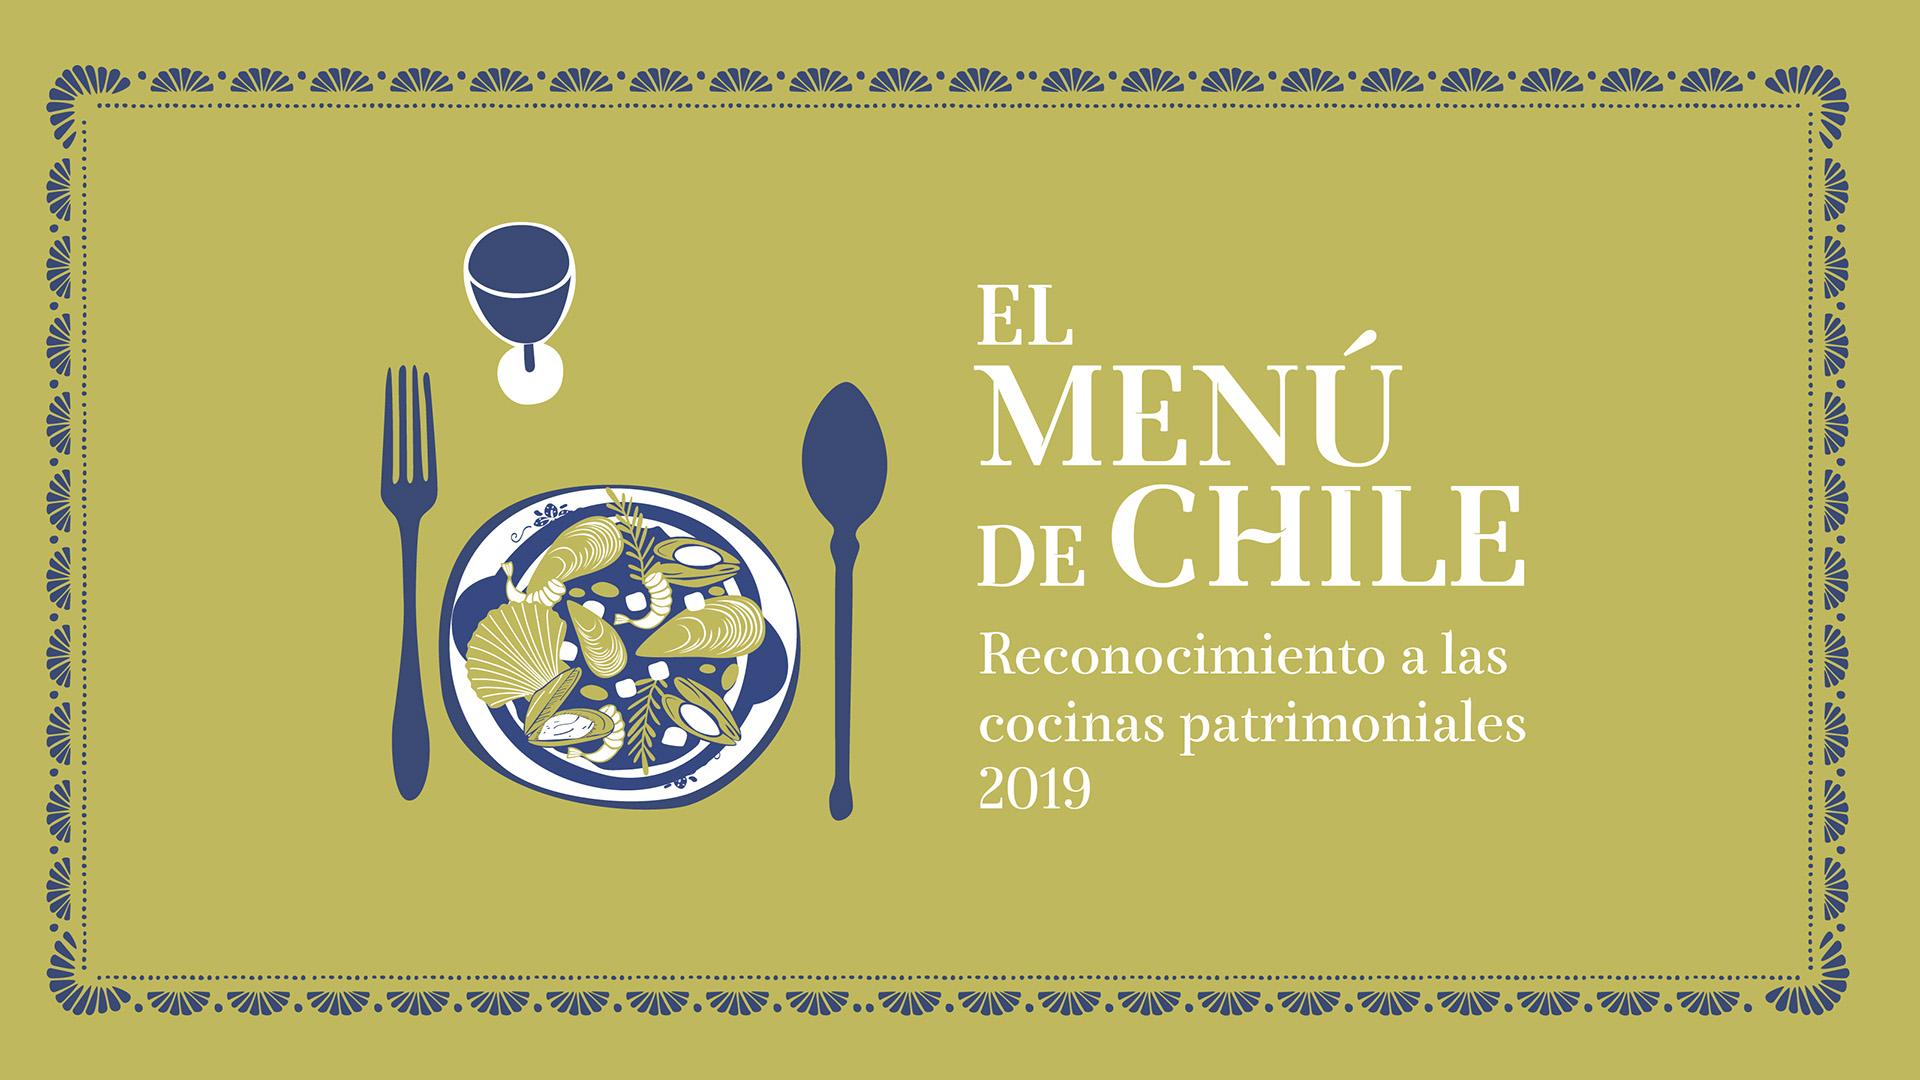 El Menú de Chile 2019: Reconocimiento a las cocinas patrimoniales